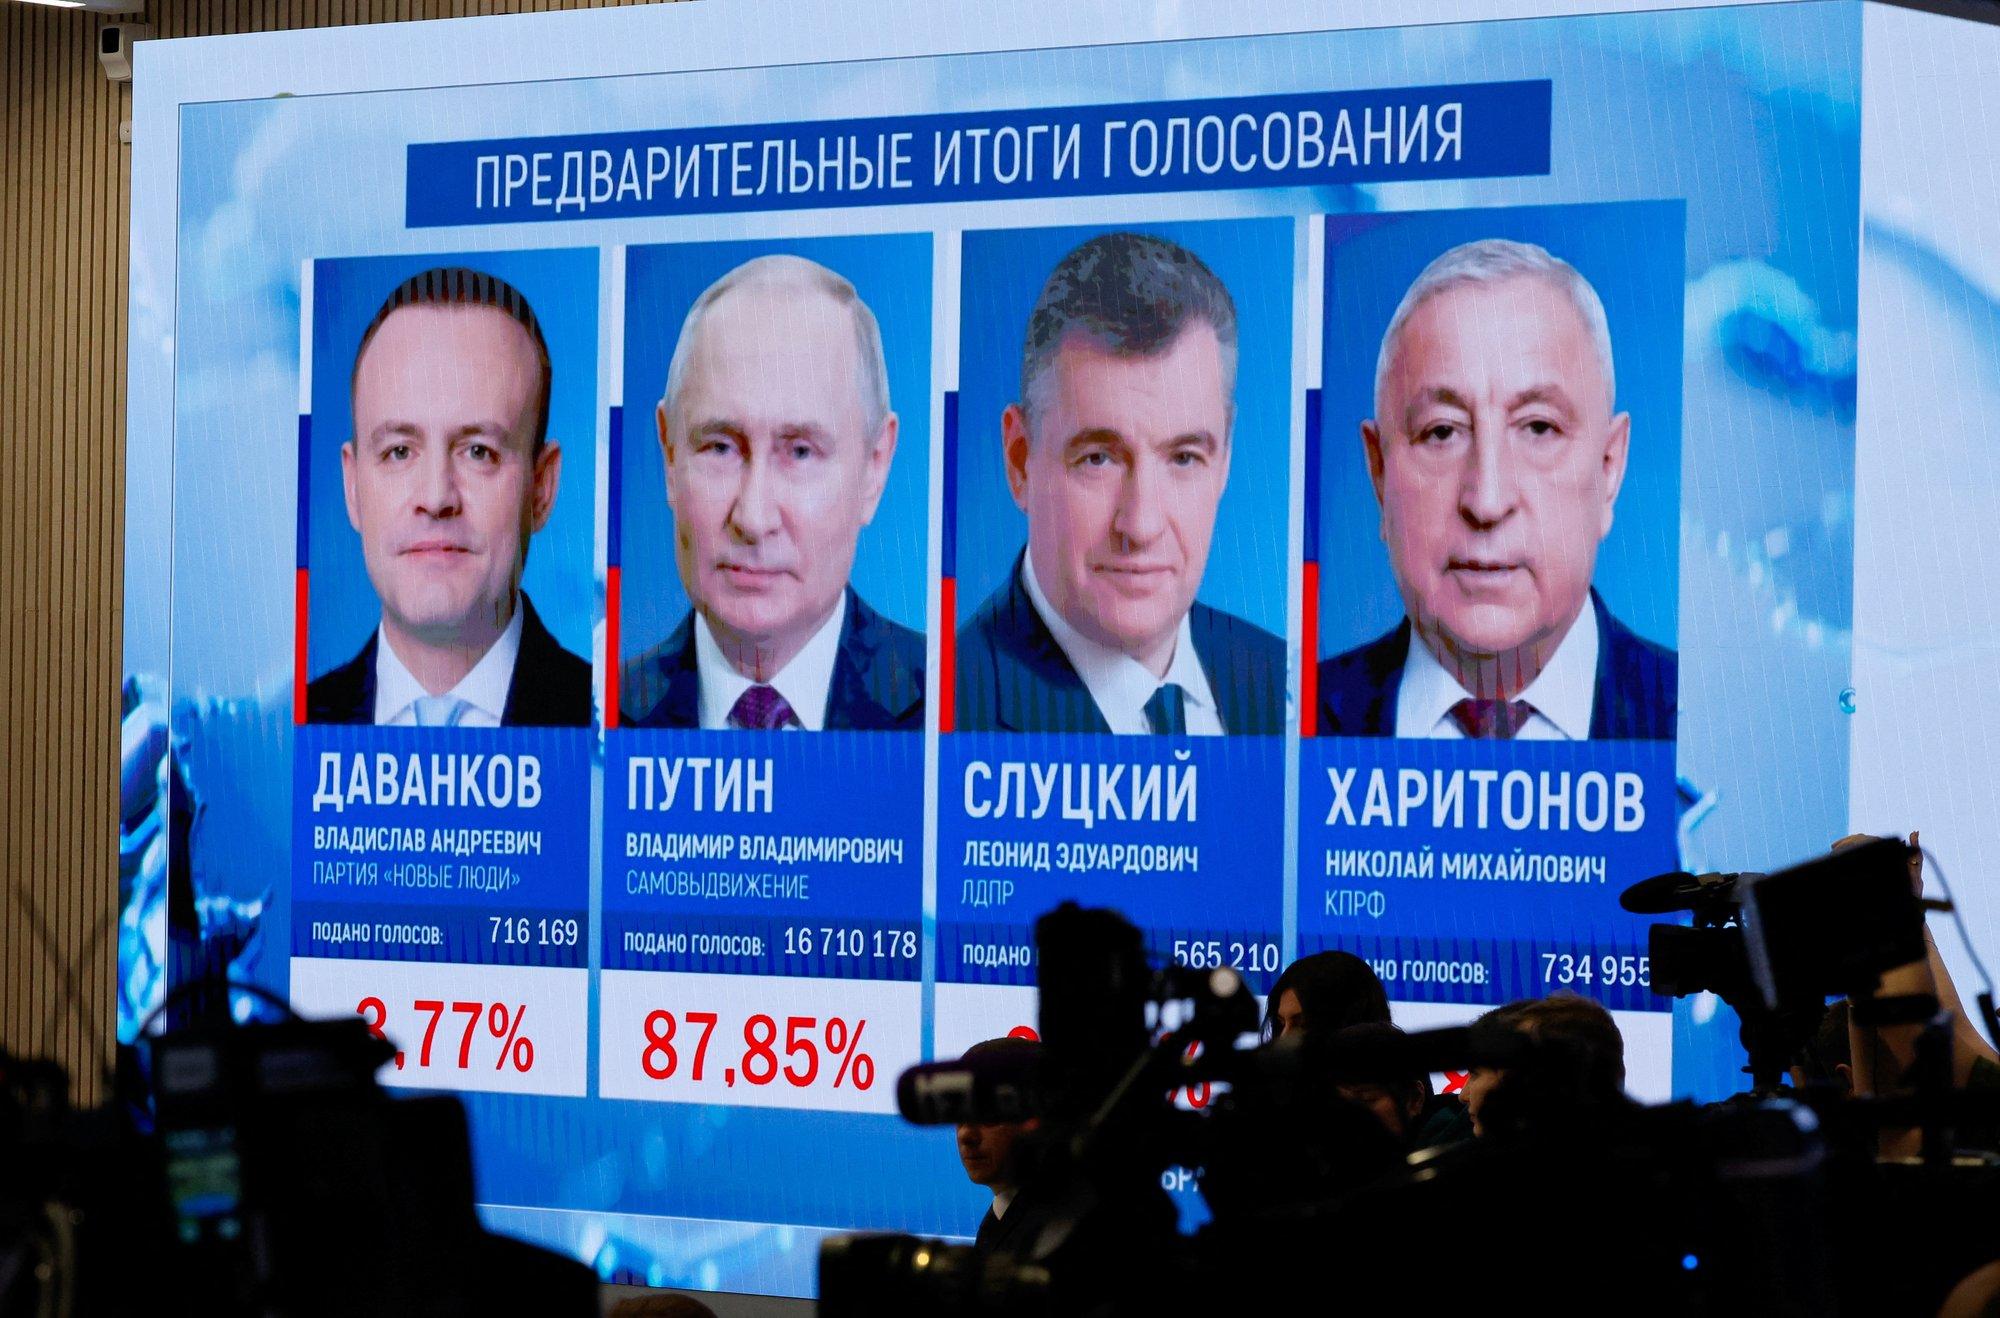 "Это не демократия" и "результаты в какой-то степени неожиданные". Как на победу Путина реагируют в мире